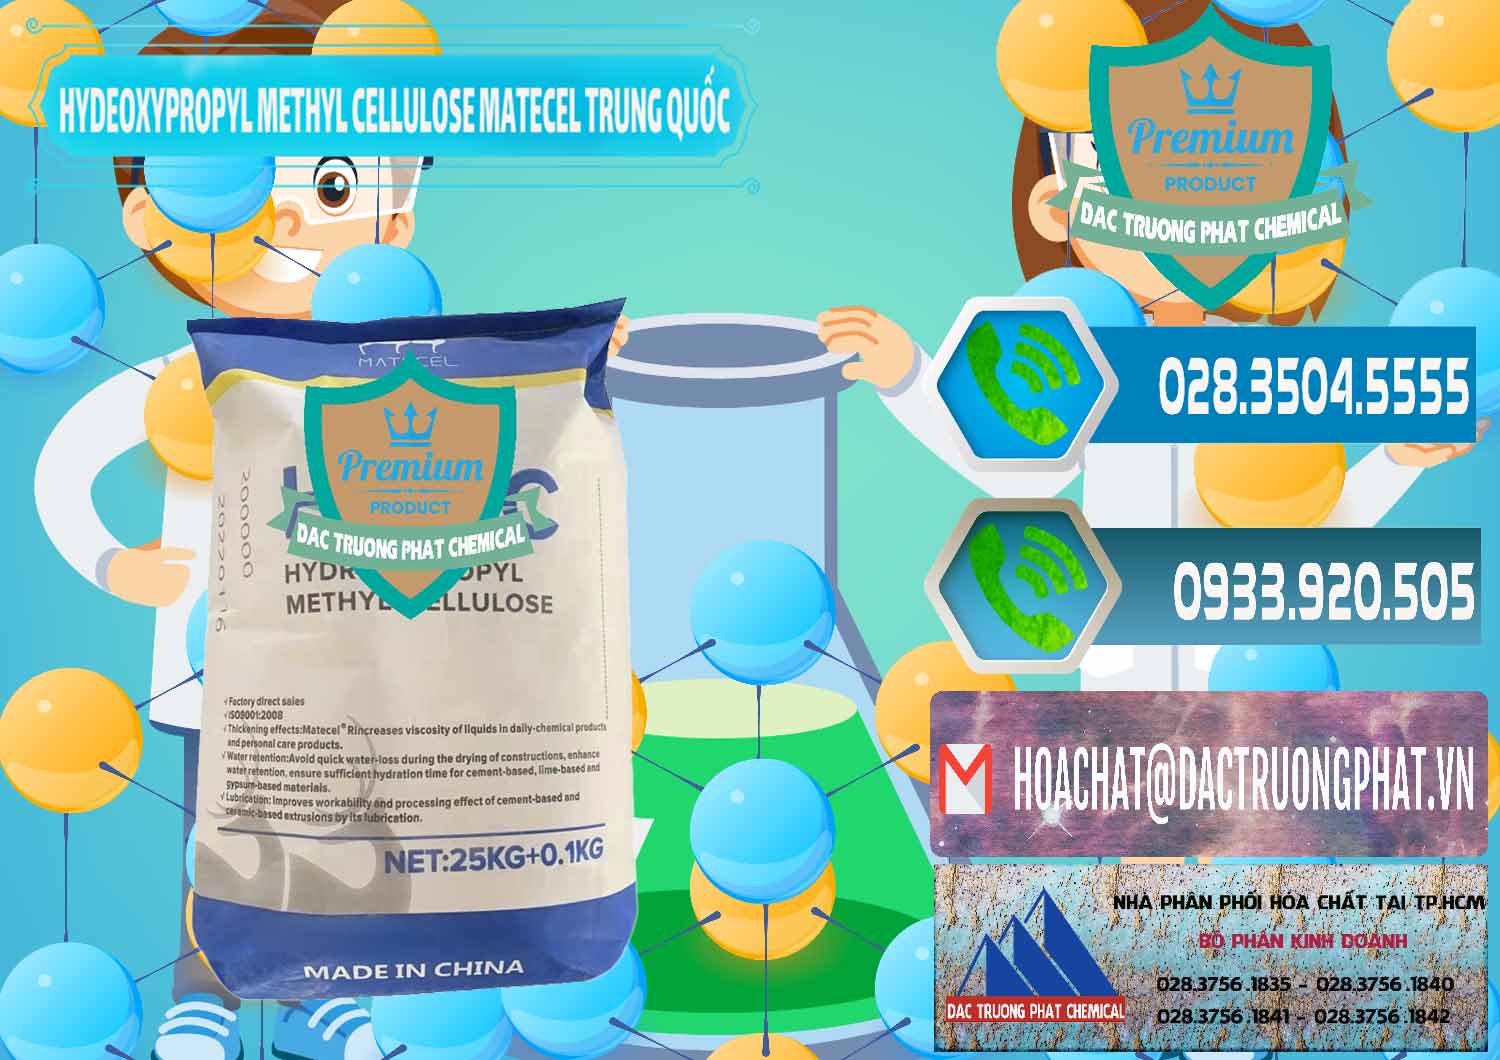 Cty chuyên bán và cung cấp Chất Tạo Đặc HPMC - Hydroxypropyl Methyl Cellulose Matecel Trung Quốc China - 0396 - Kinh doanh và cung cấp hóa chất tại TP.HCM - congtyhoachat.net